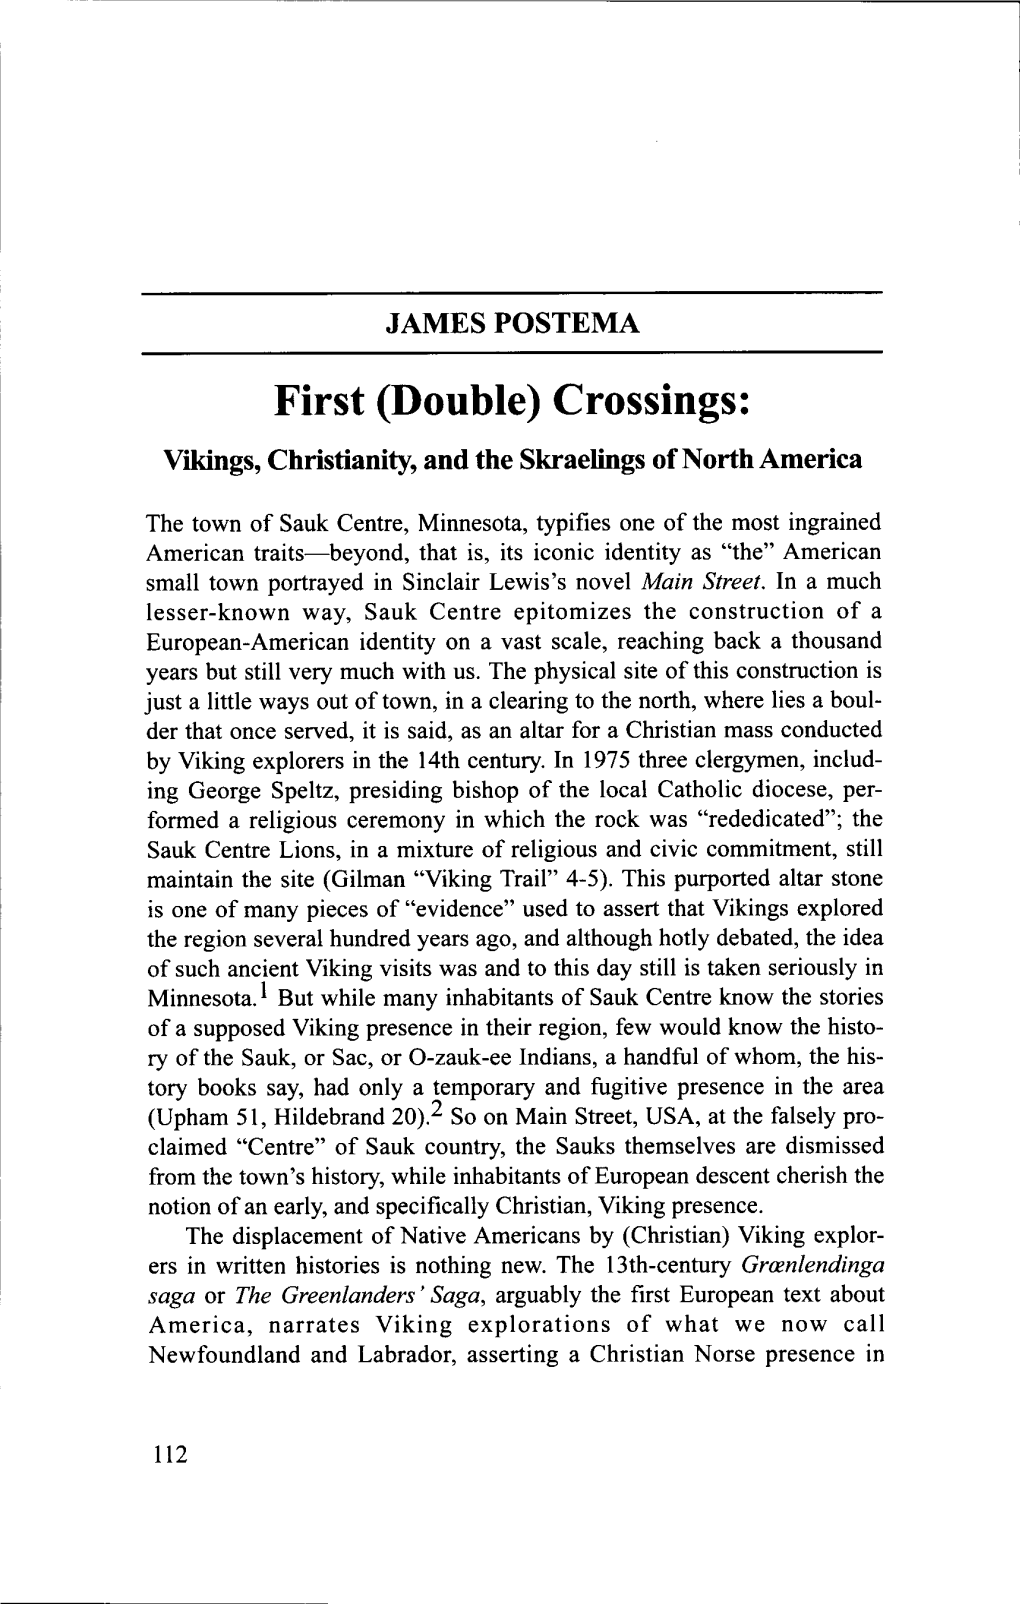 (Double) Crossings: Vikings, Christianity, and the Skraelings of North America